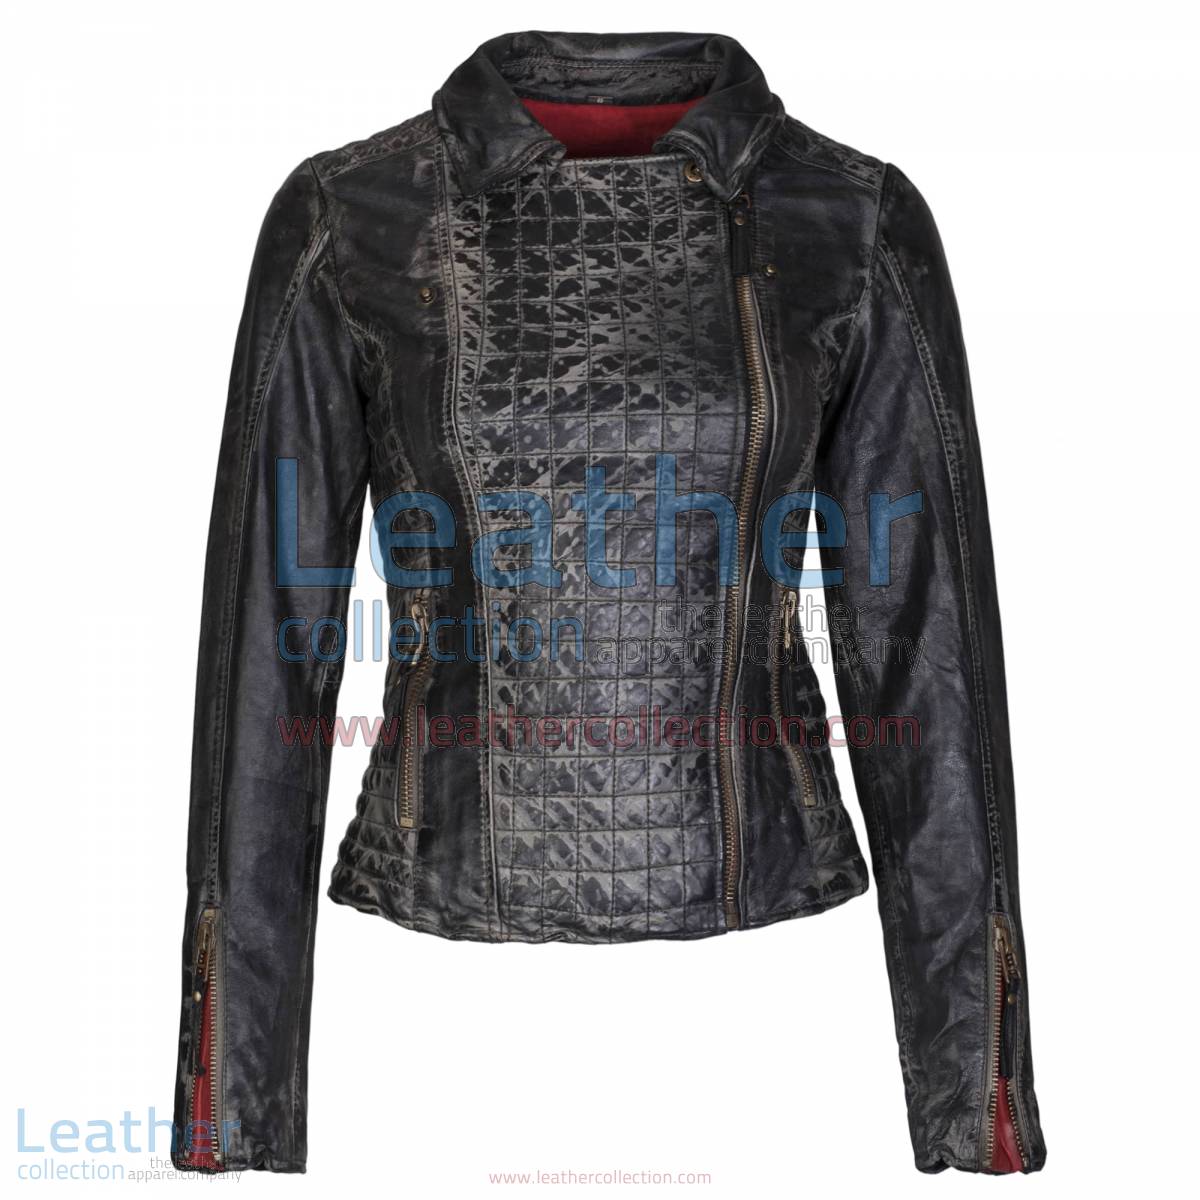 Heritage Ladies Black Fashion Leather Jacket